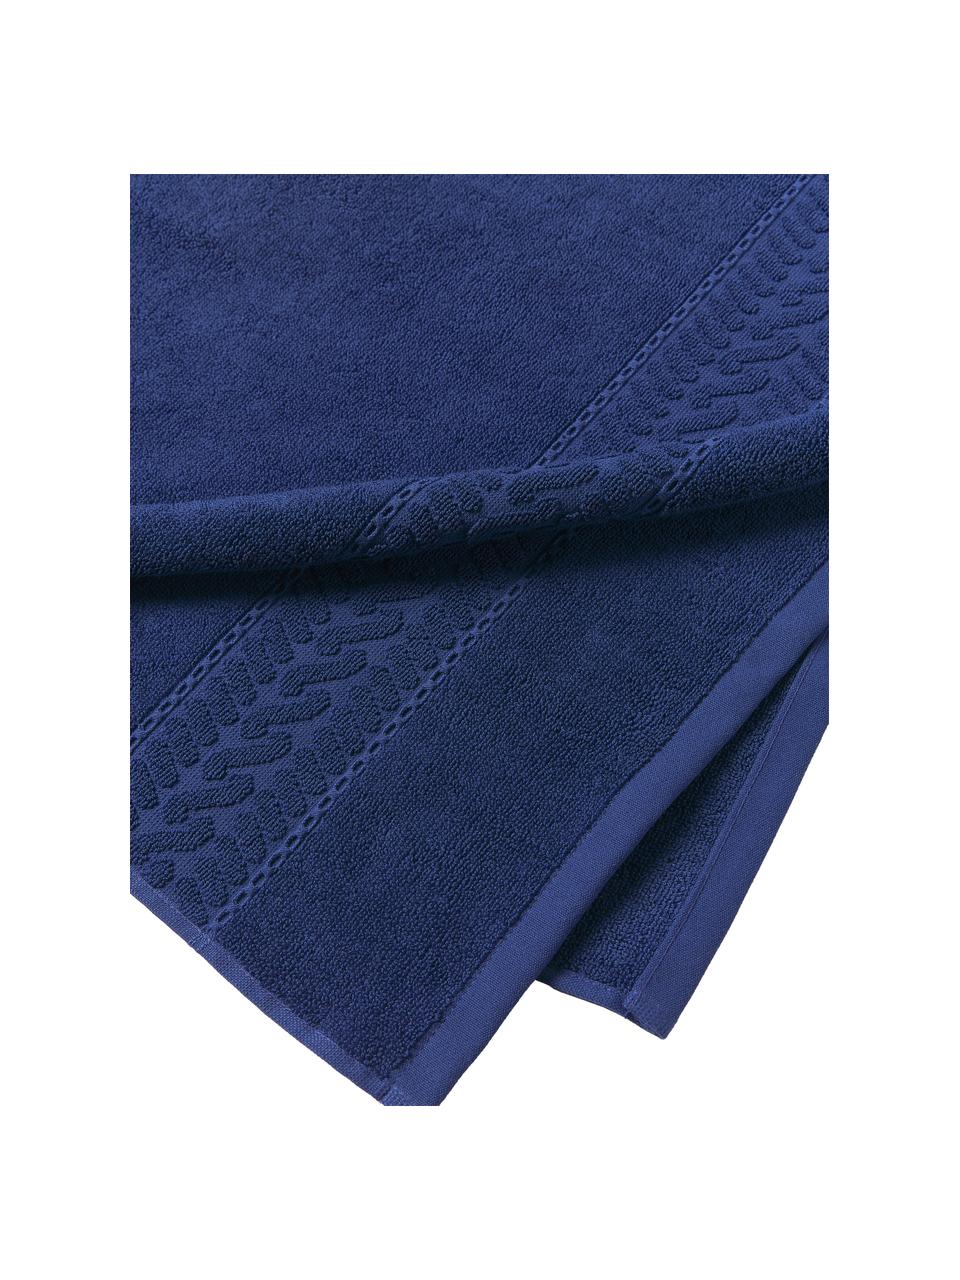 Toalla Cordelia, tamaños diferentes, Azul oscuro, Toalla de ducha, An 70 x L 140 cm